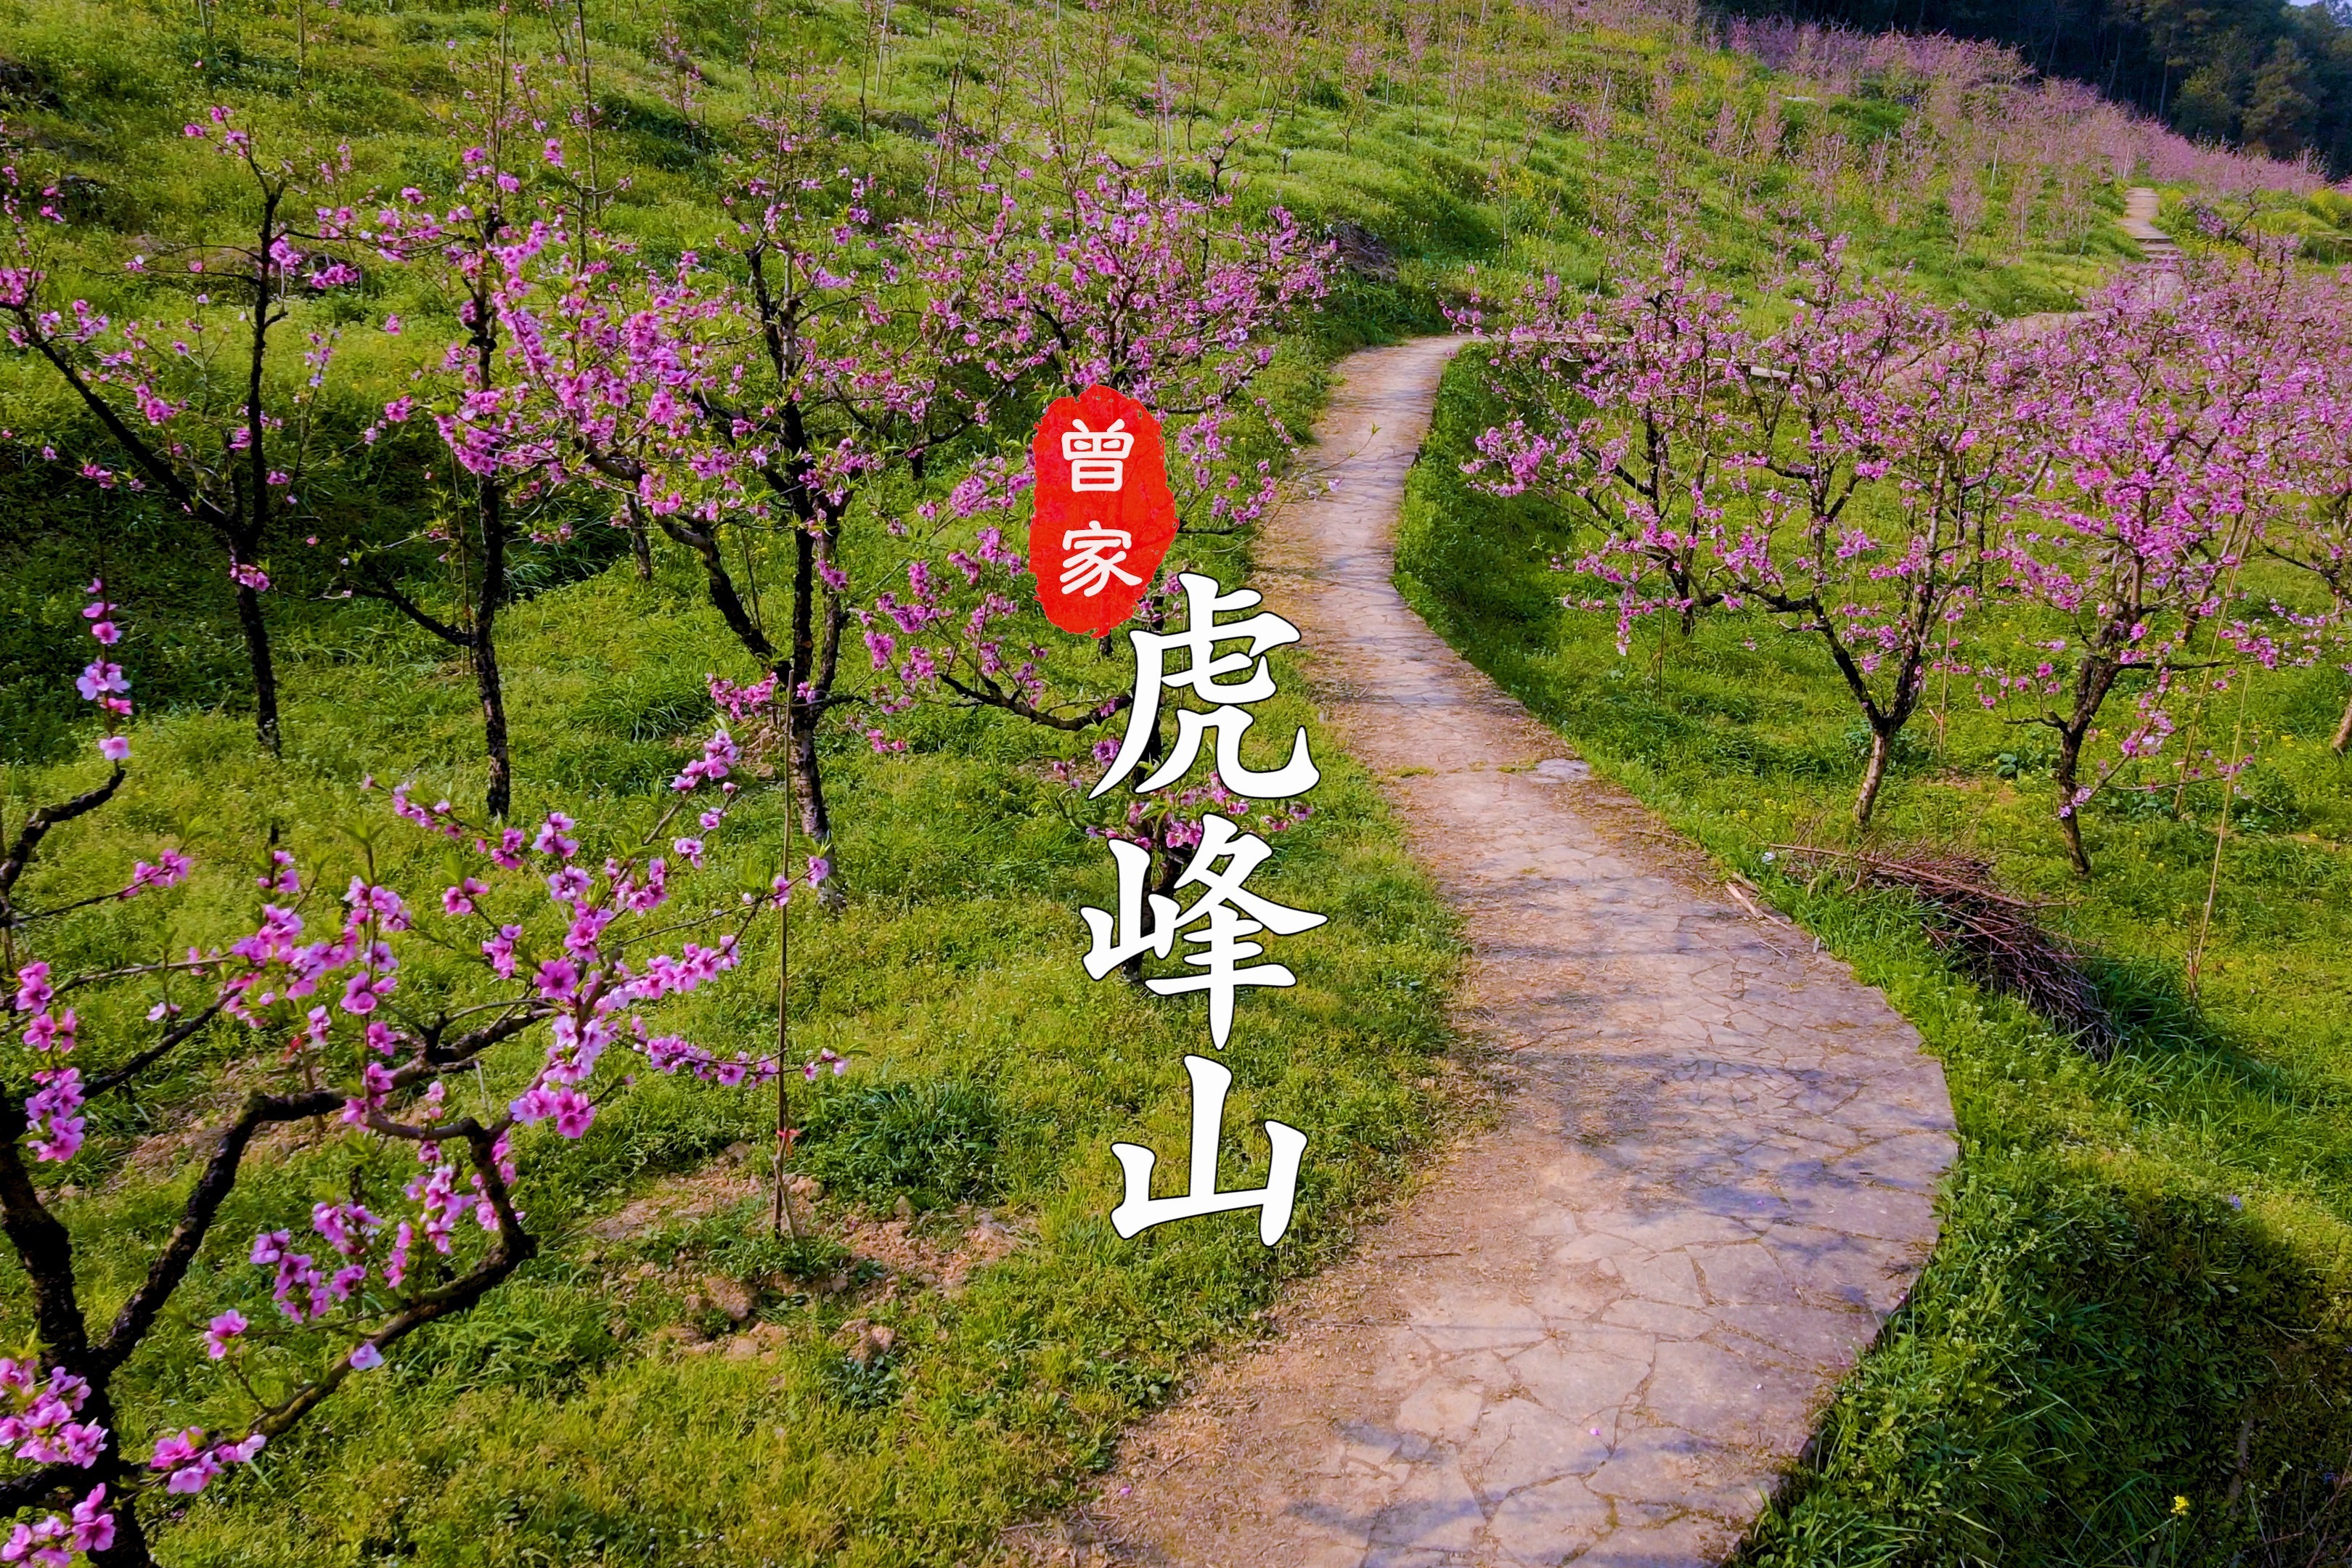 这样的春天很美!西部重庆科学城虎峰山上有桃花!